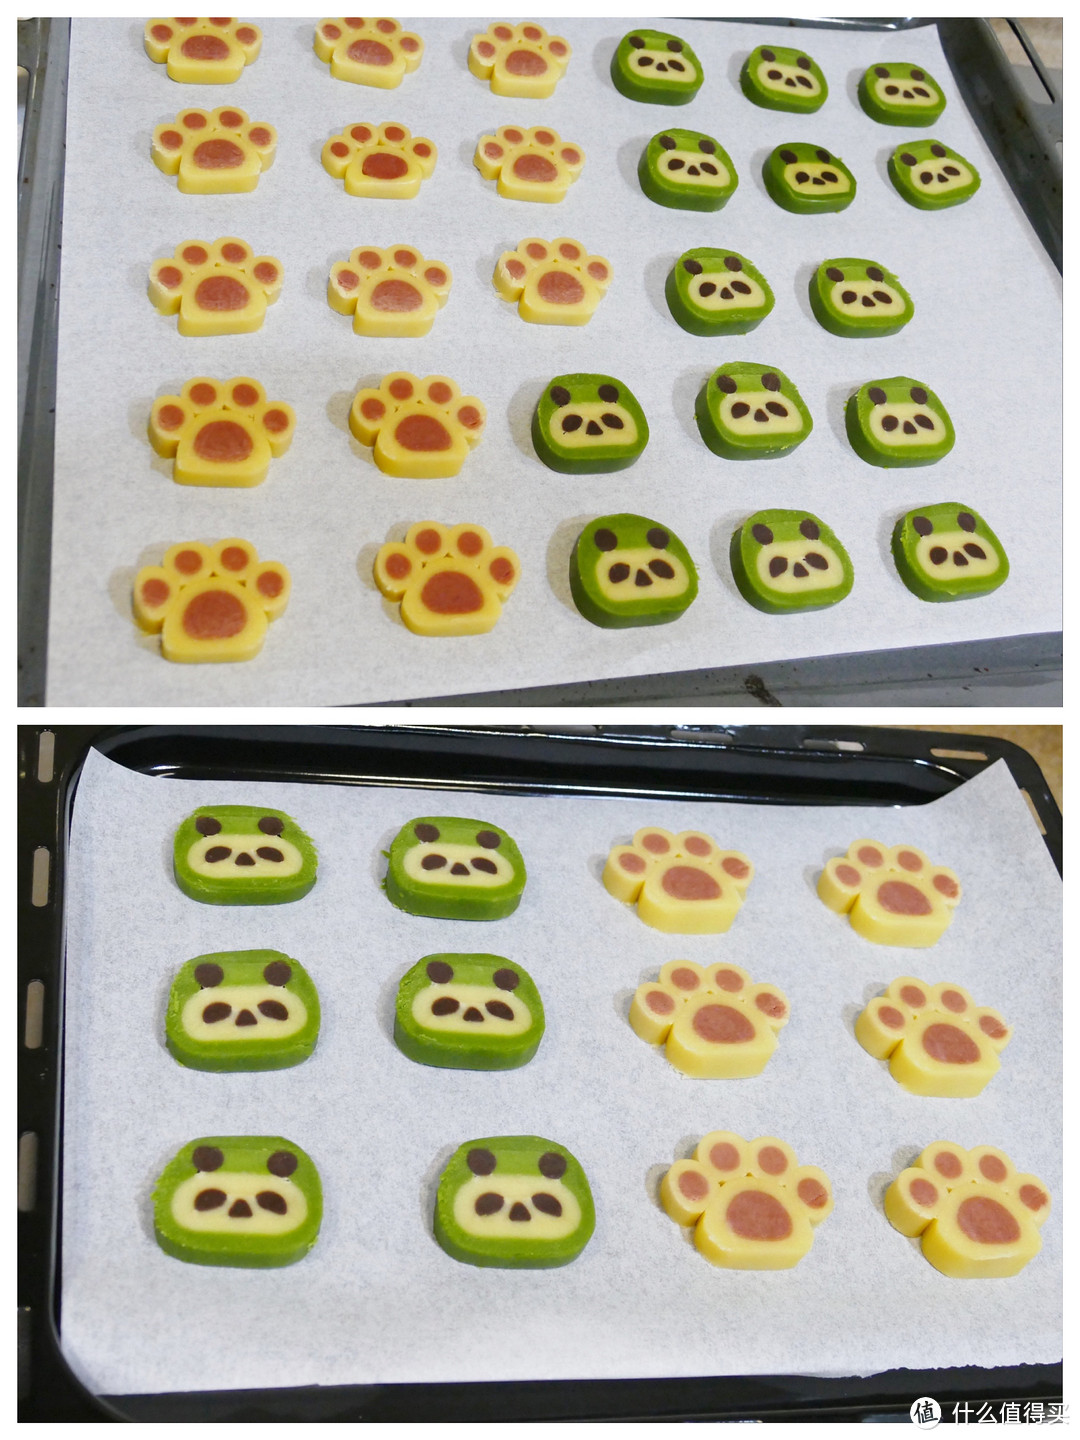 上图柏翠烤盘里的熊猫饼干面团，由于切的时候没有把握好，左侧边缘处有毛边，导致最后成品的边缘处不平整，非烤箱烤制的原因造成。